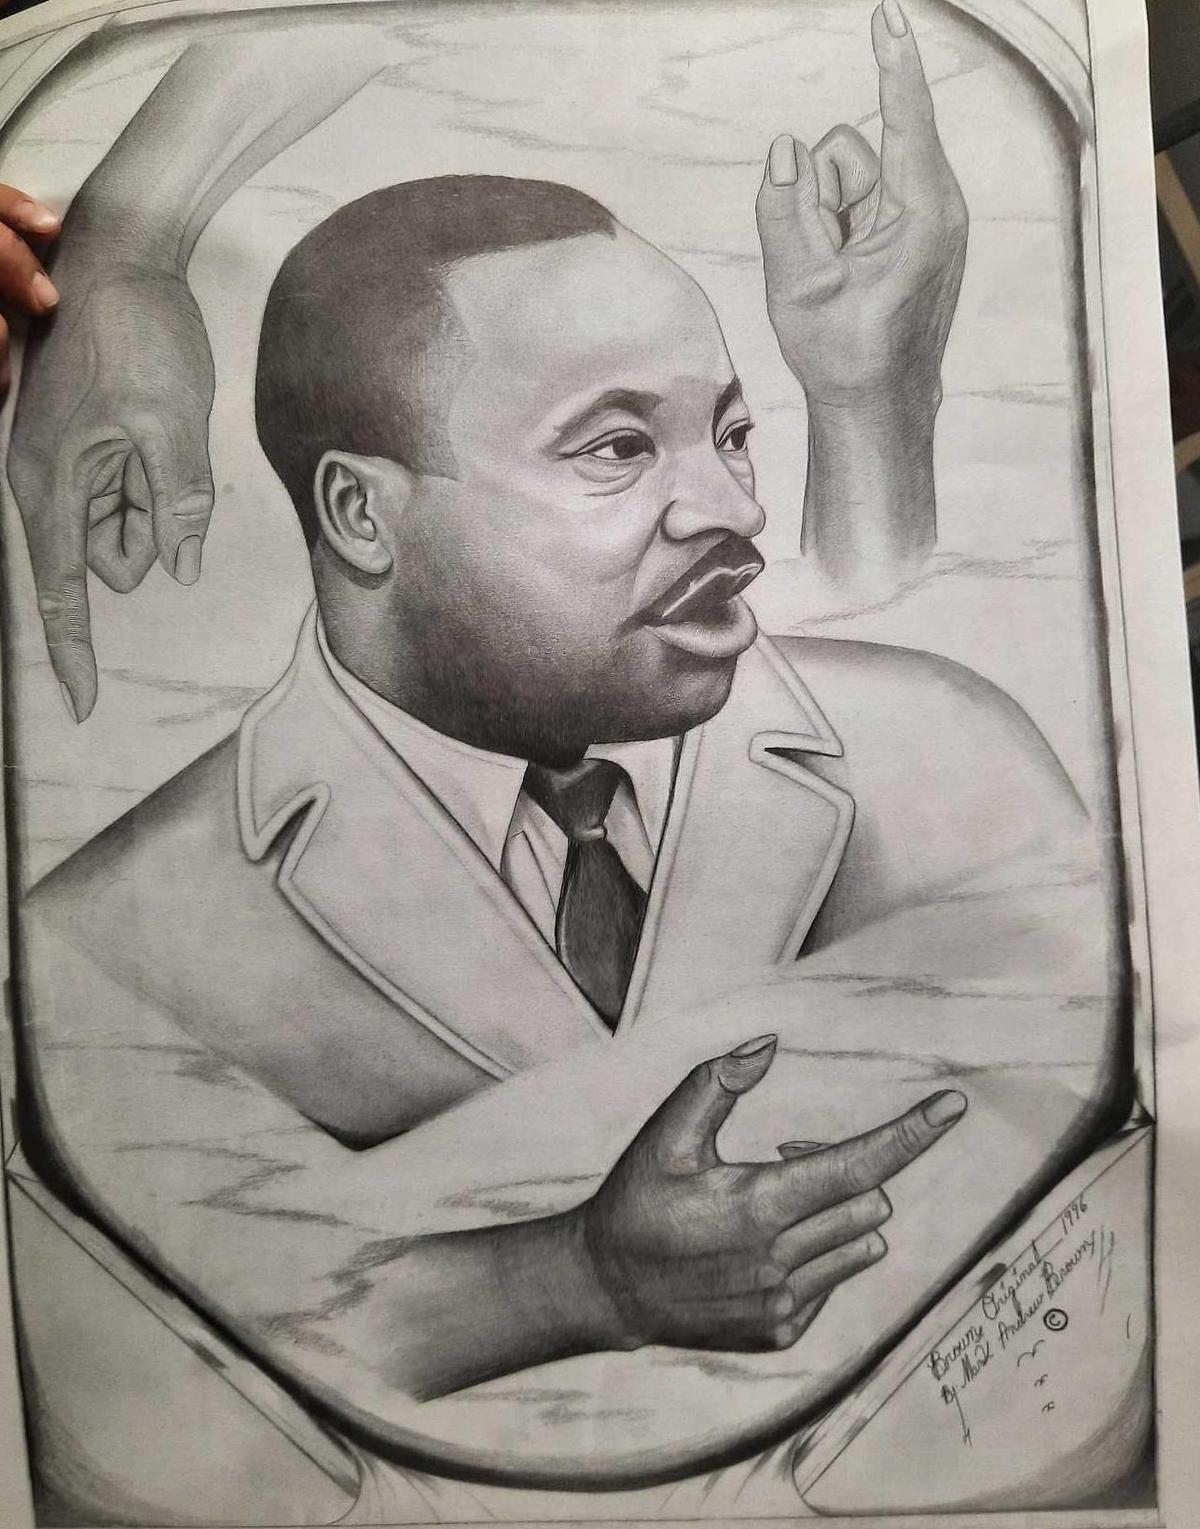 Pallet of Martin Luther King Jr. Sketch Prints